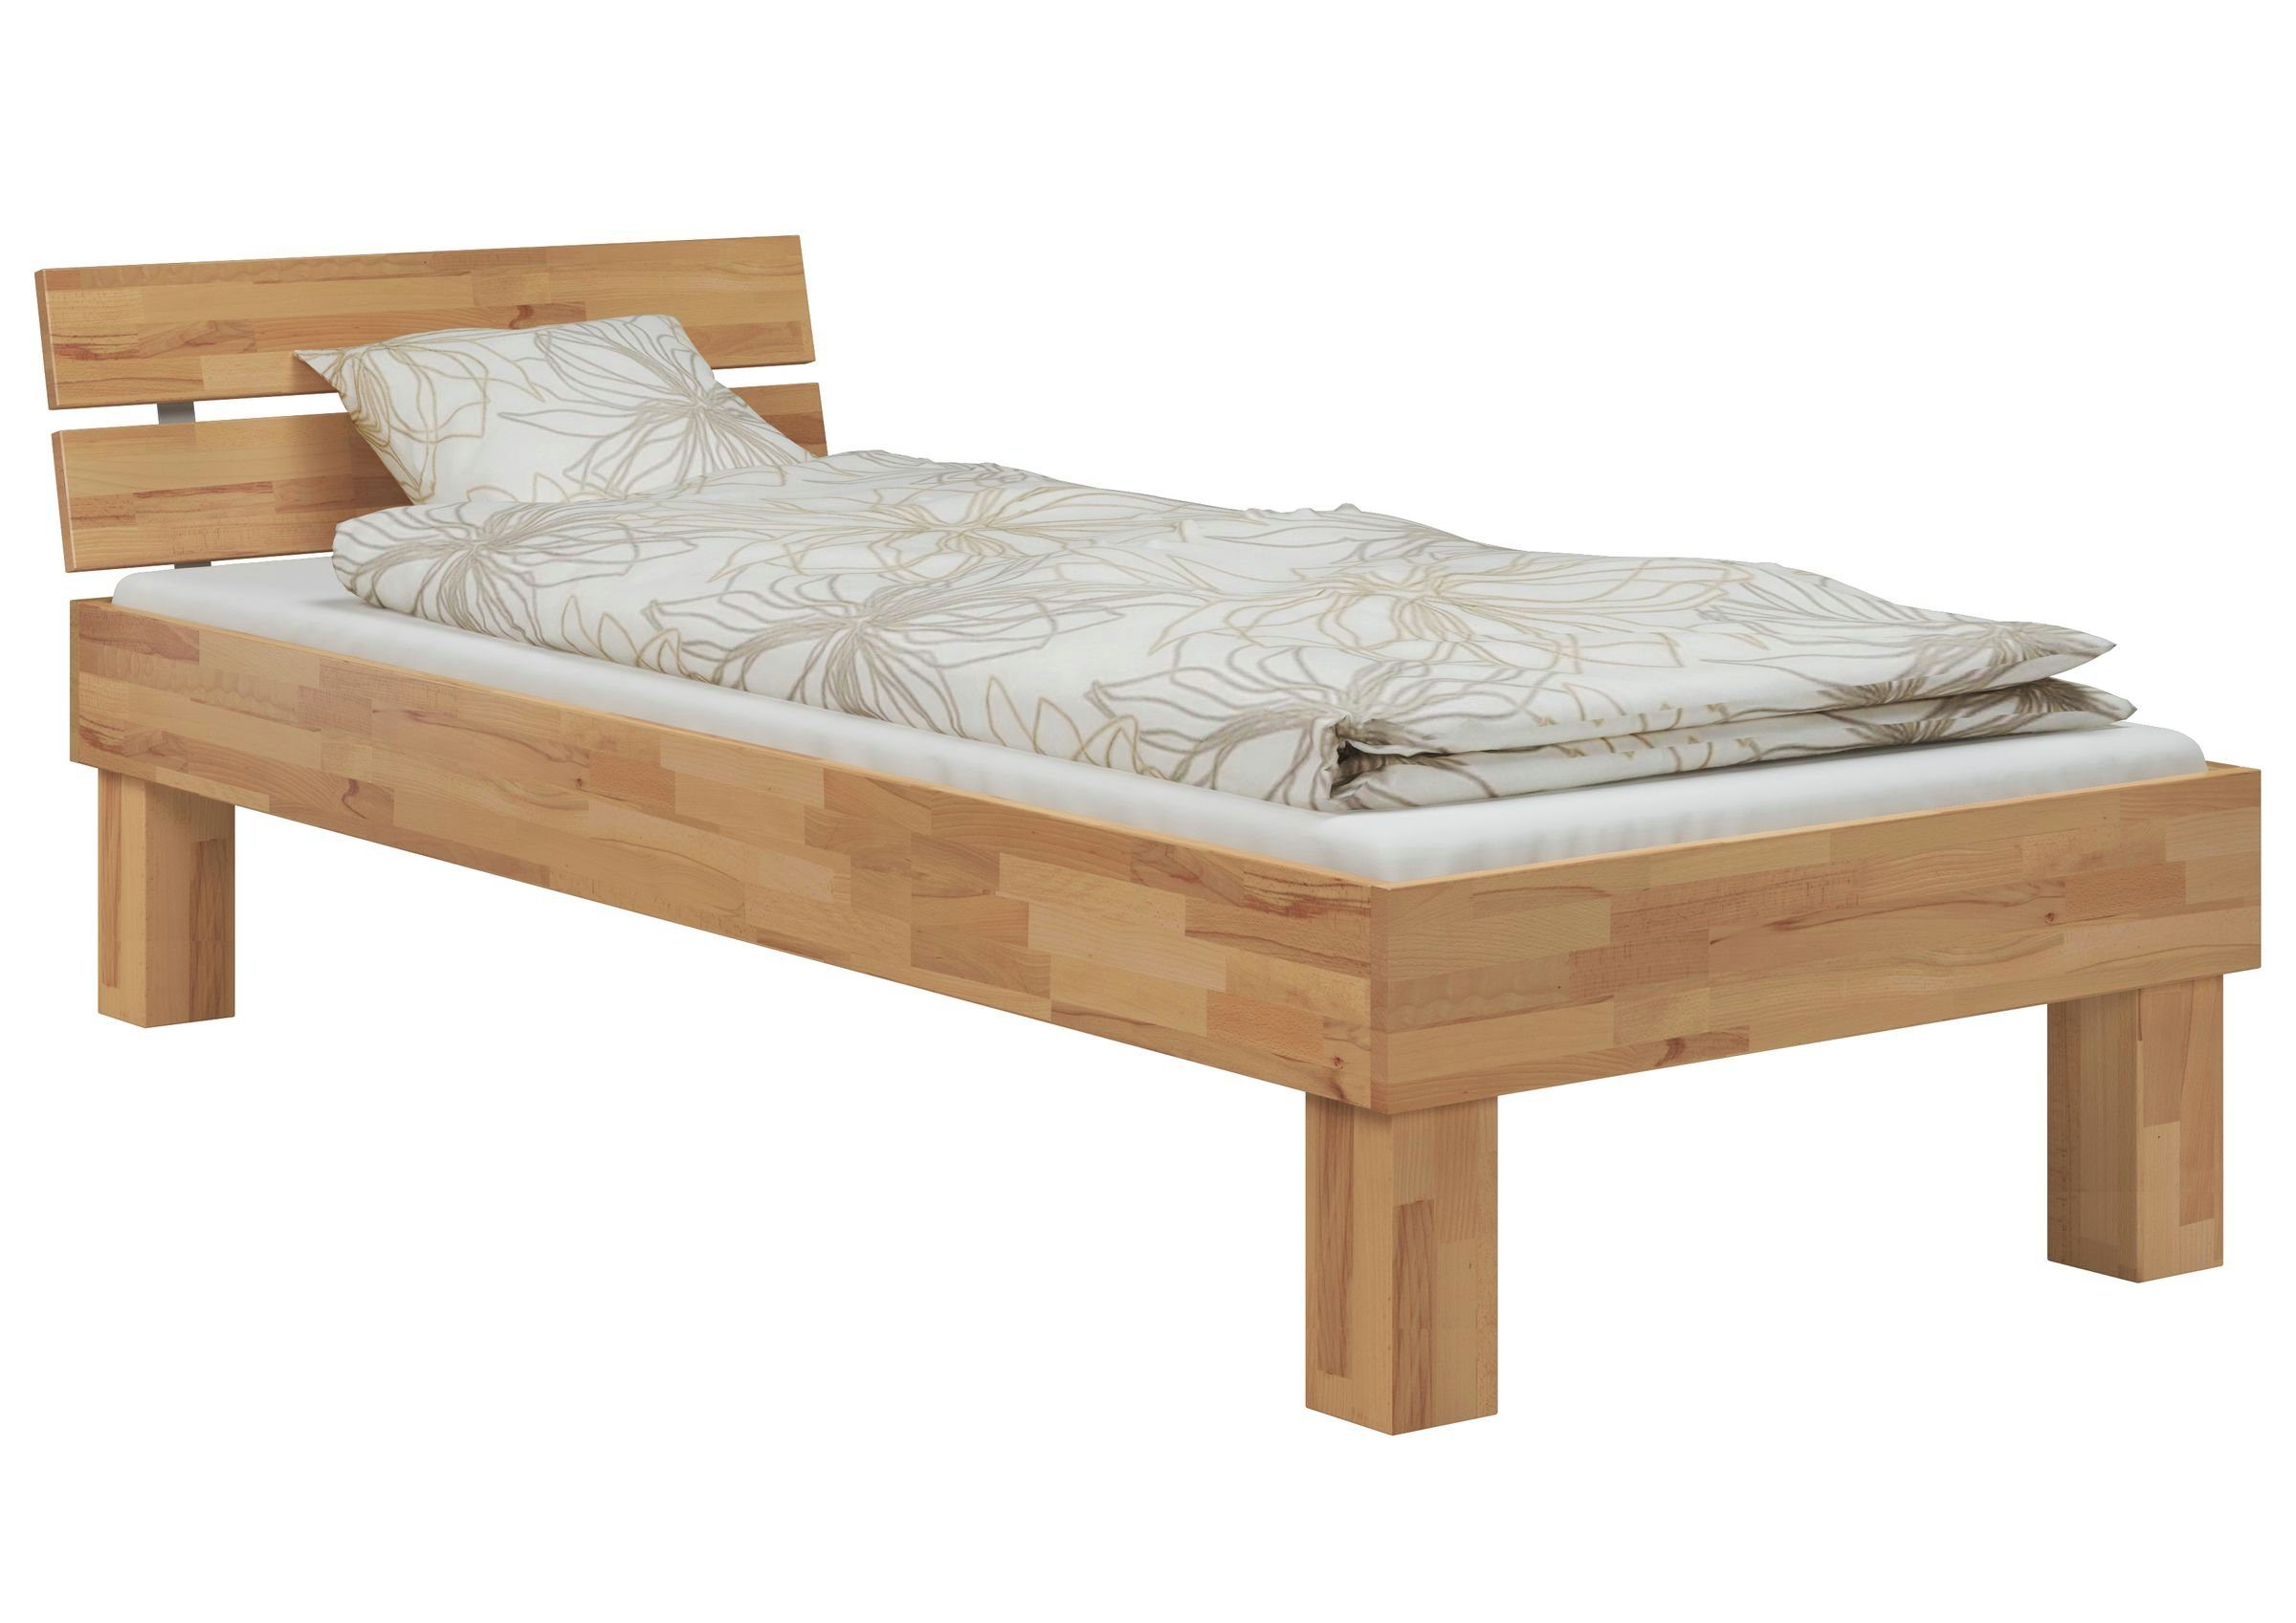 ERST-HOLZ Bett Buchefarblos 120x220 hoch + lackiert Matratze, Überlänge Buche Einzelbett + Rollrost